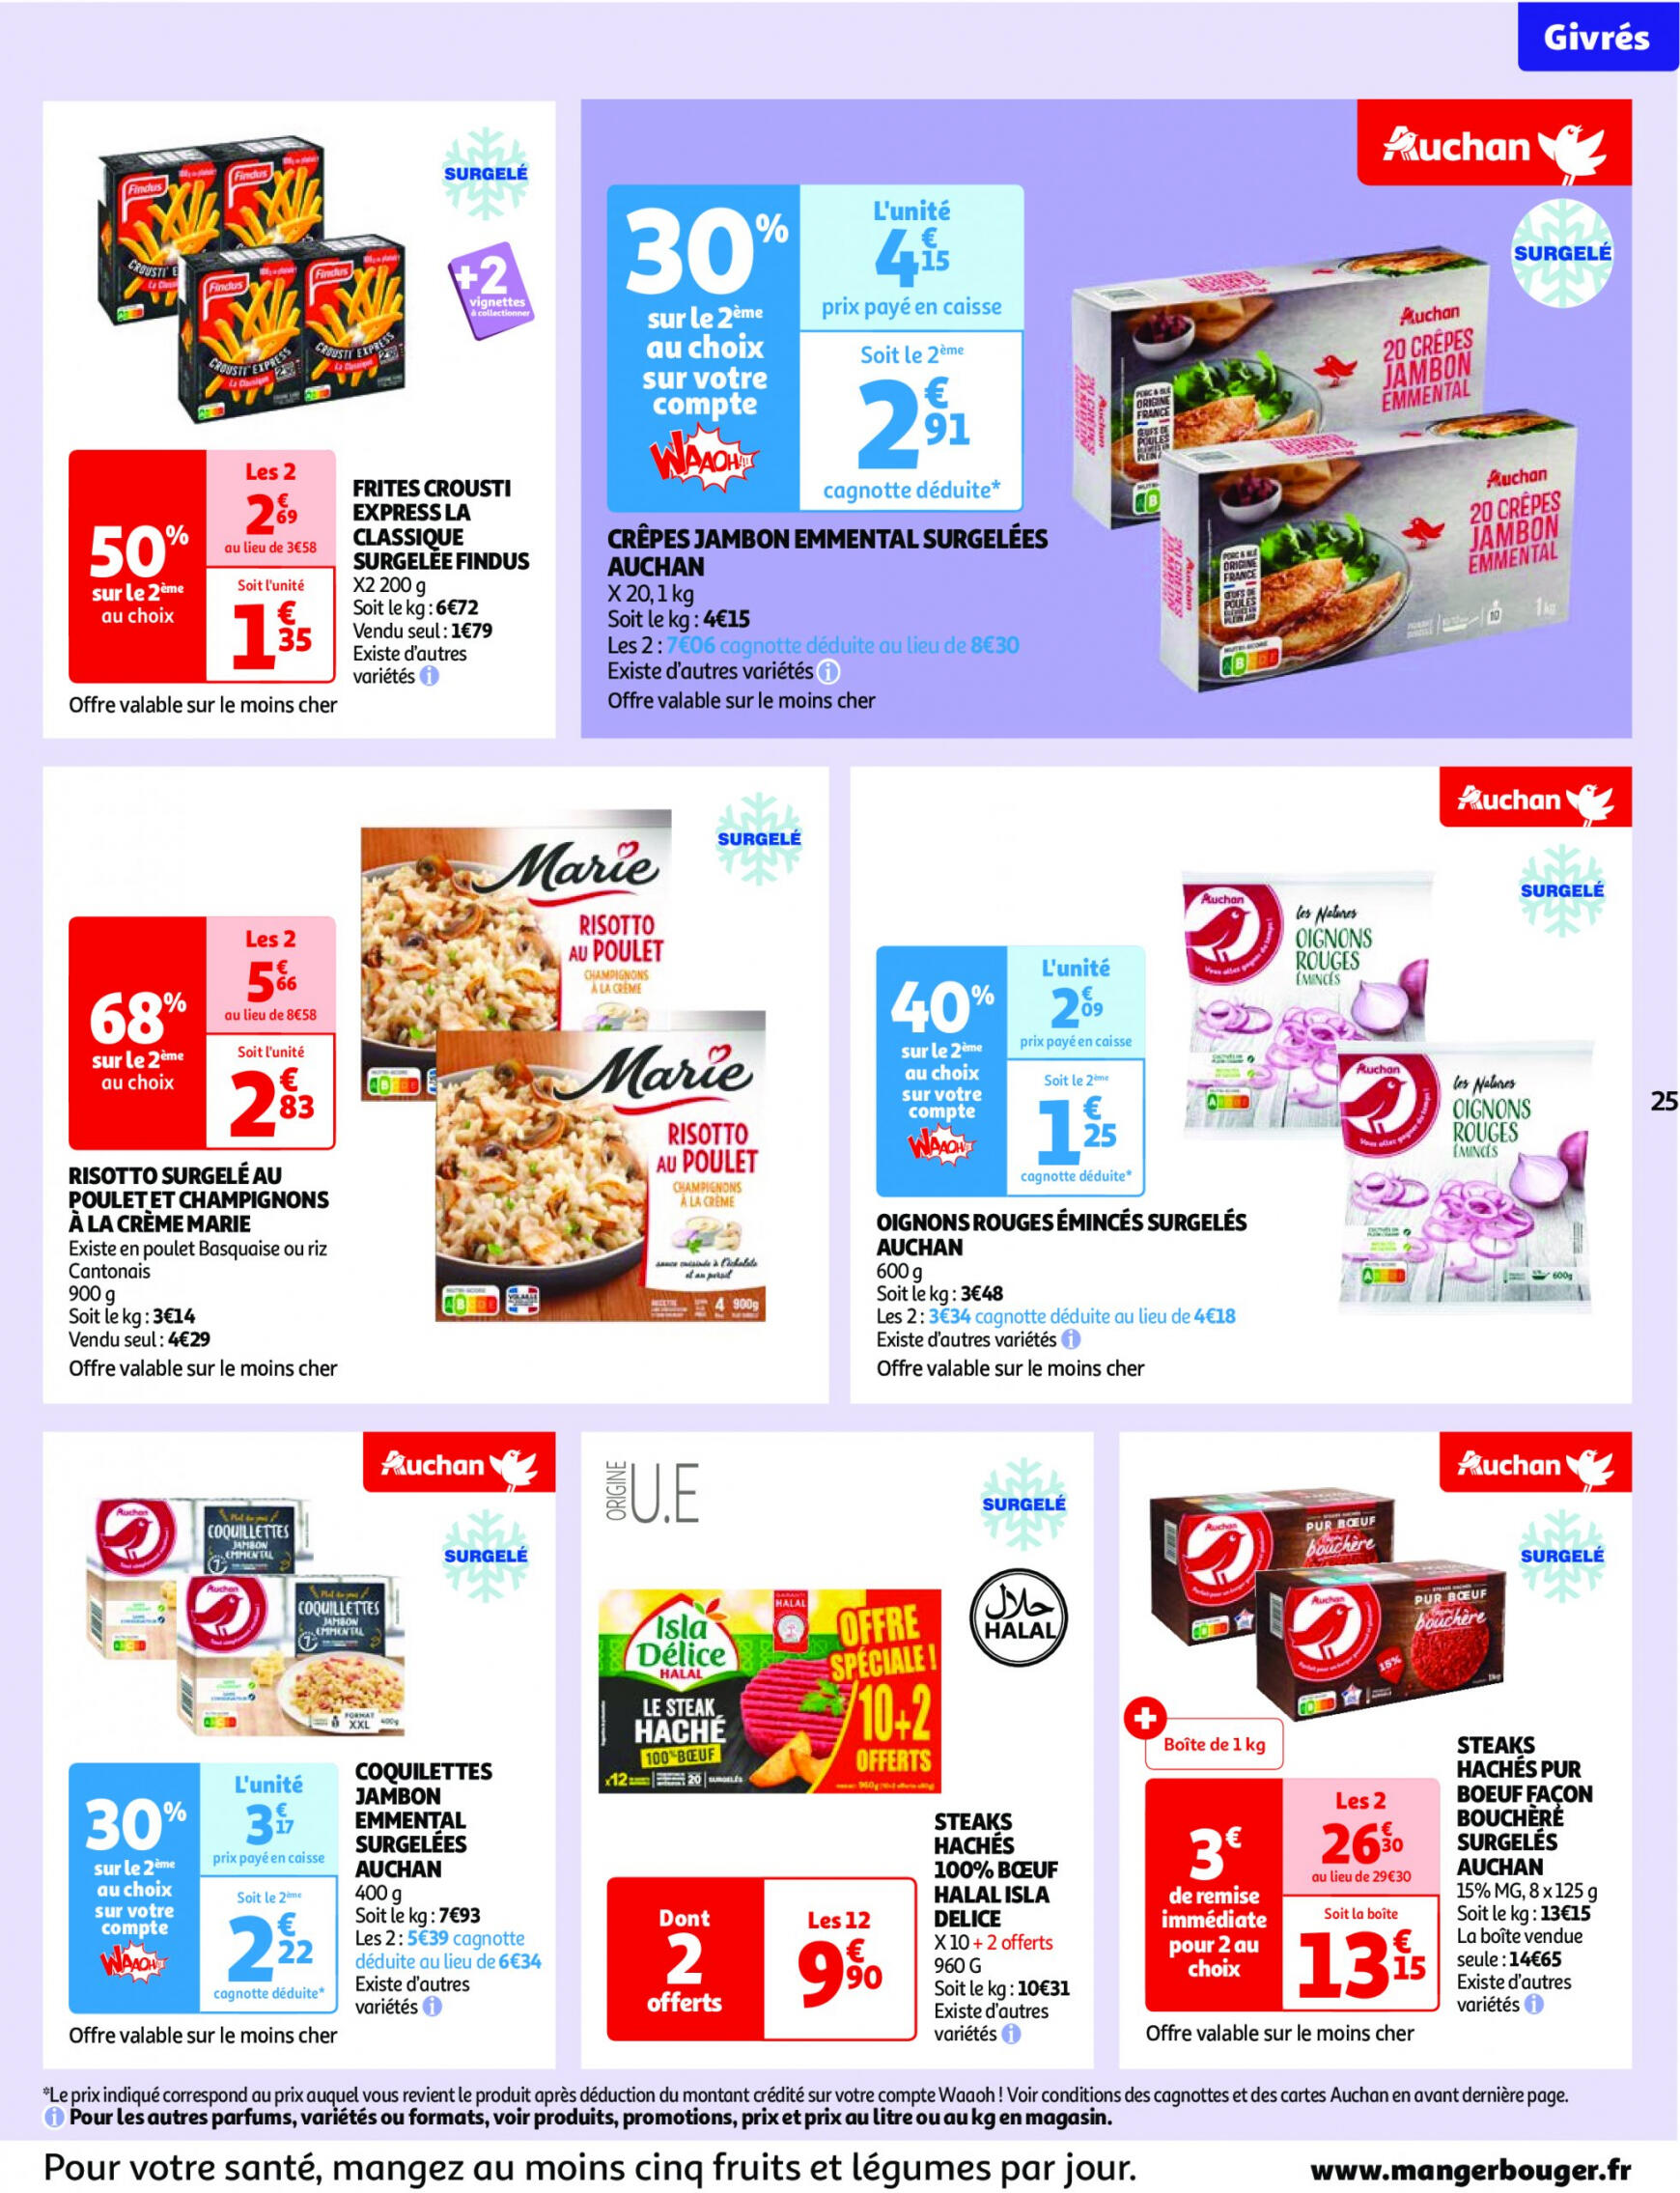 auchan - Auchan - Nos surgelés ont tout bon folder huidig 14.05. - 21.05. - page: 25